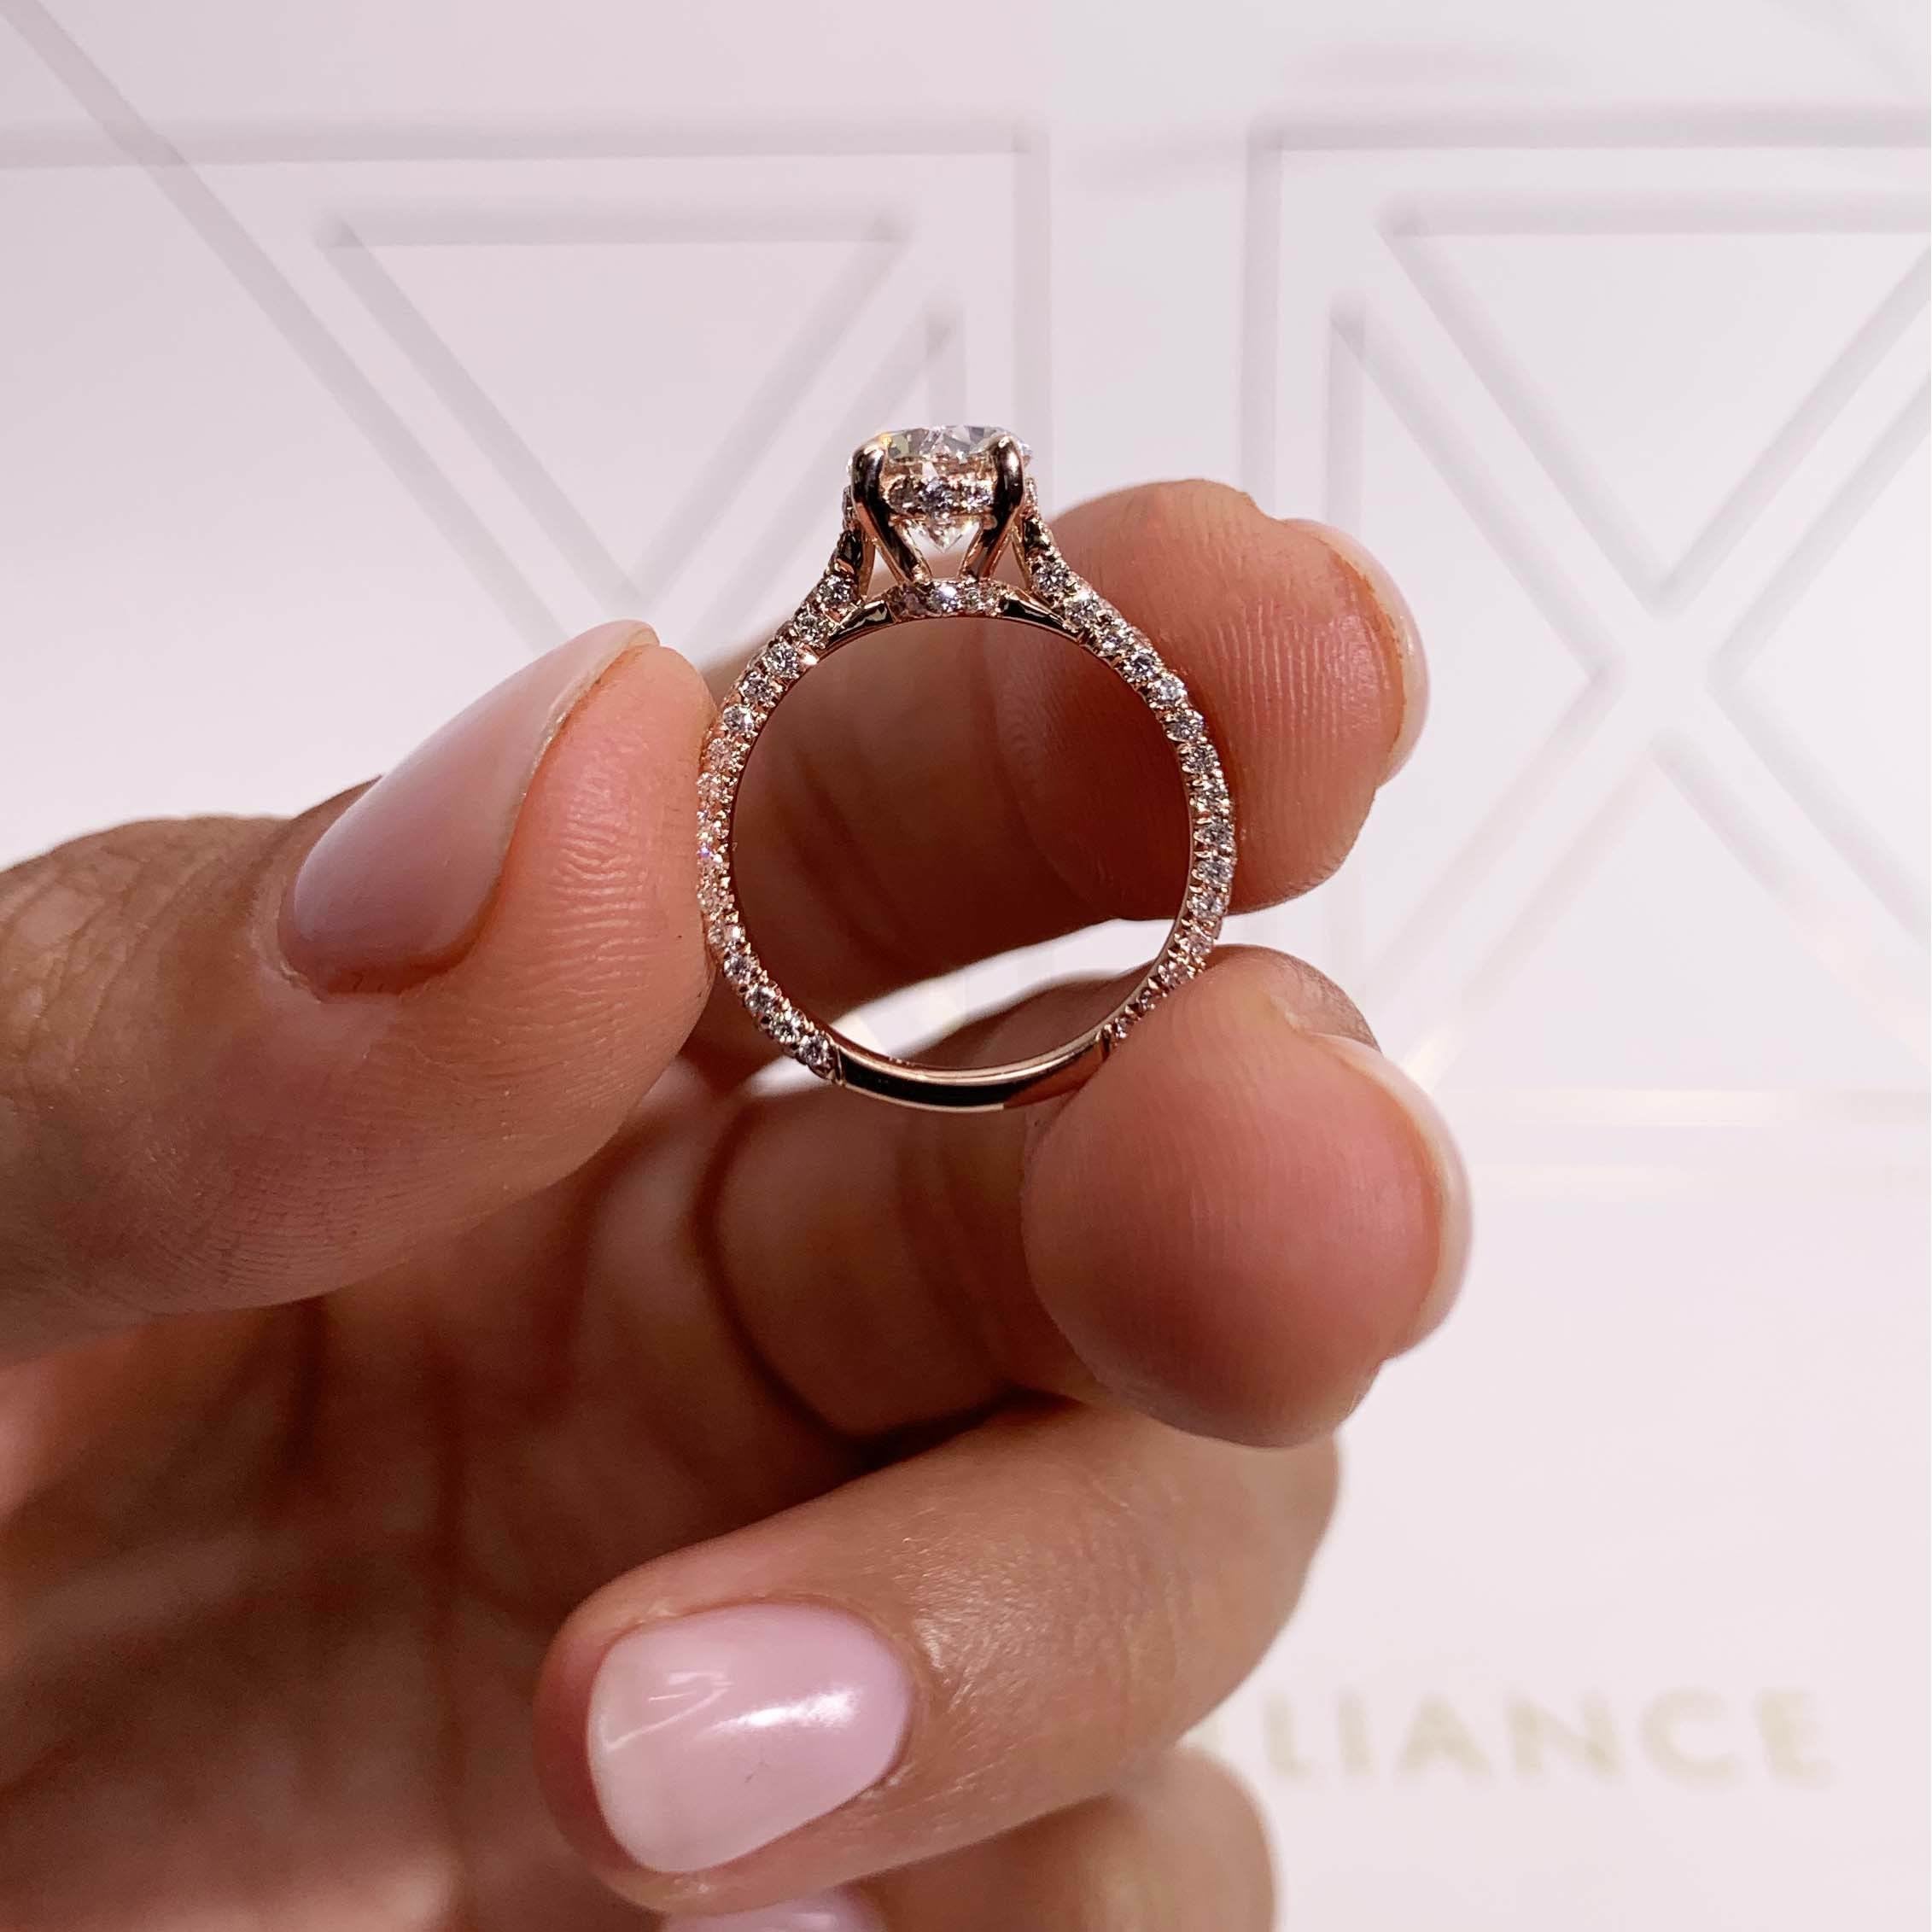 Rebecca Diamond Engagement Ring   (1.8 Carat) -14K Rose Gold